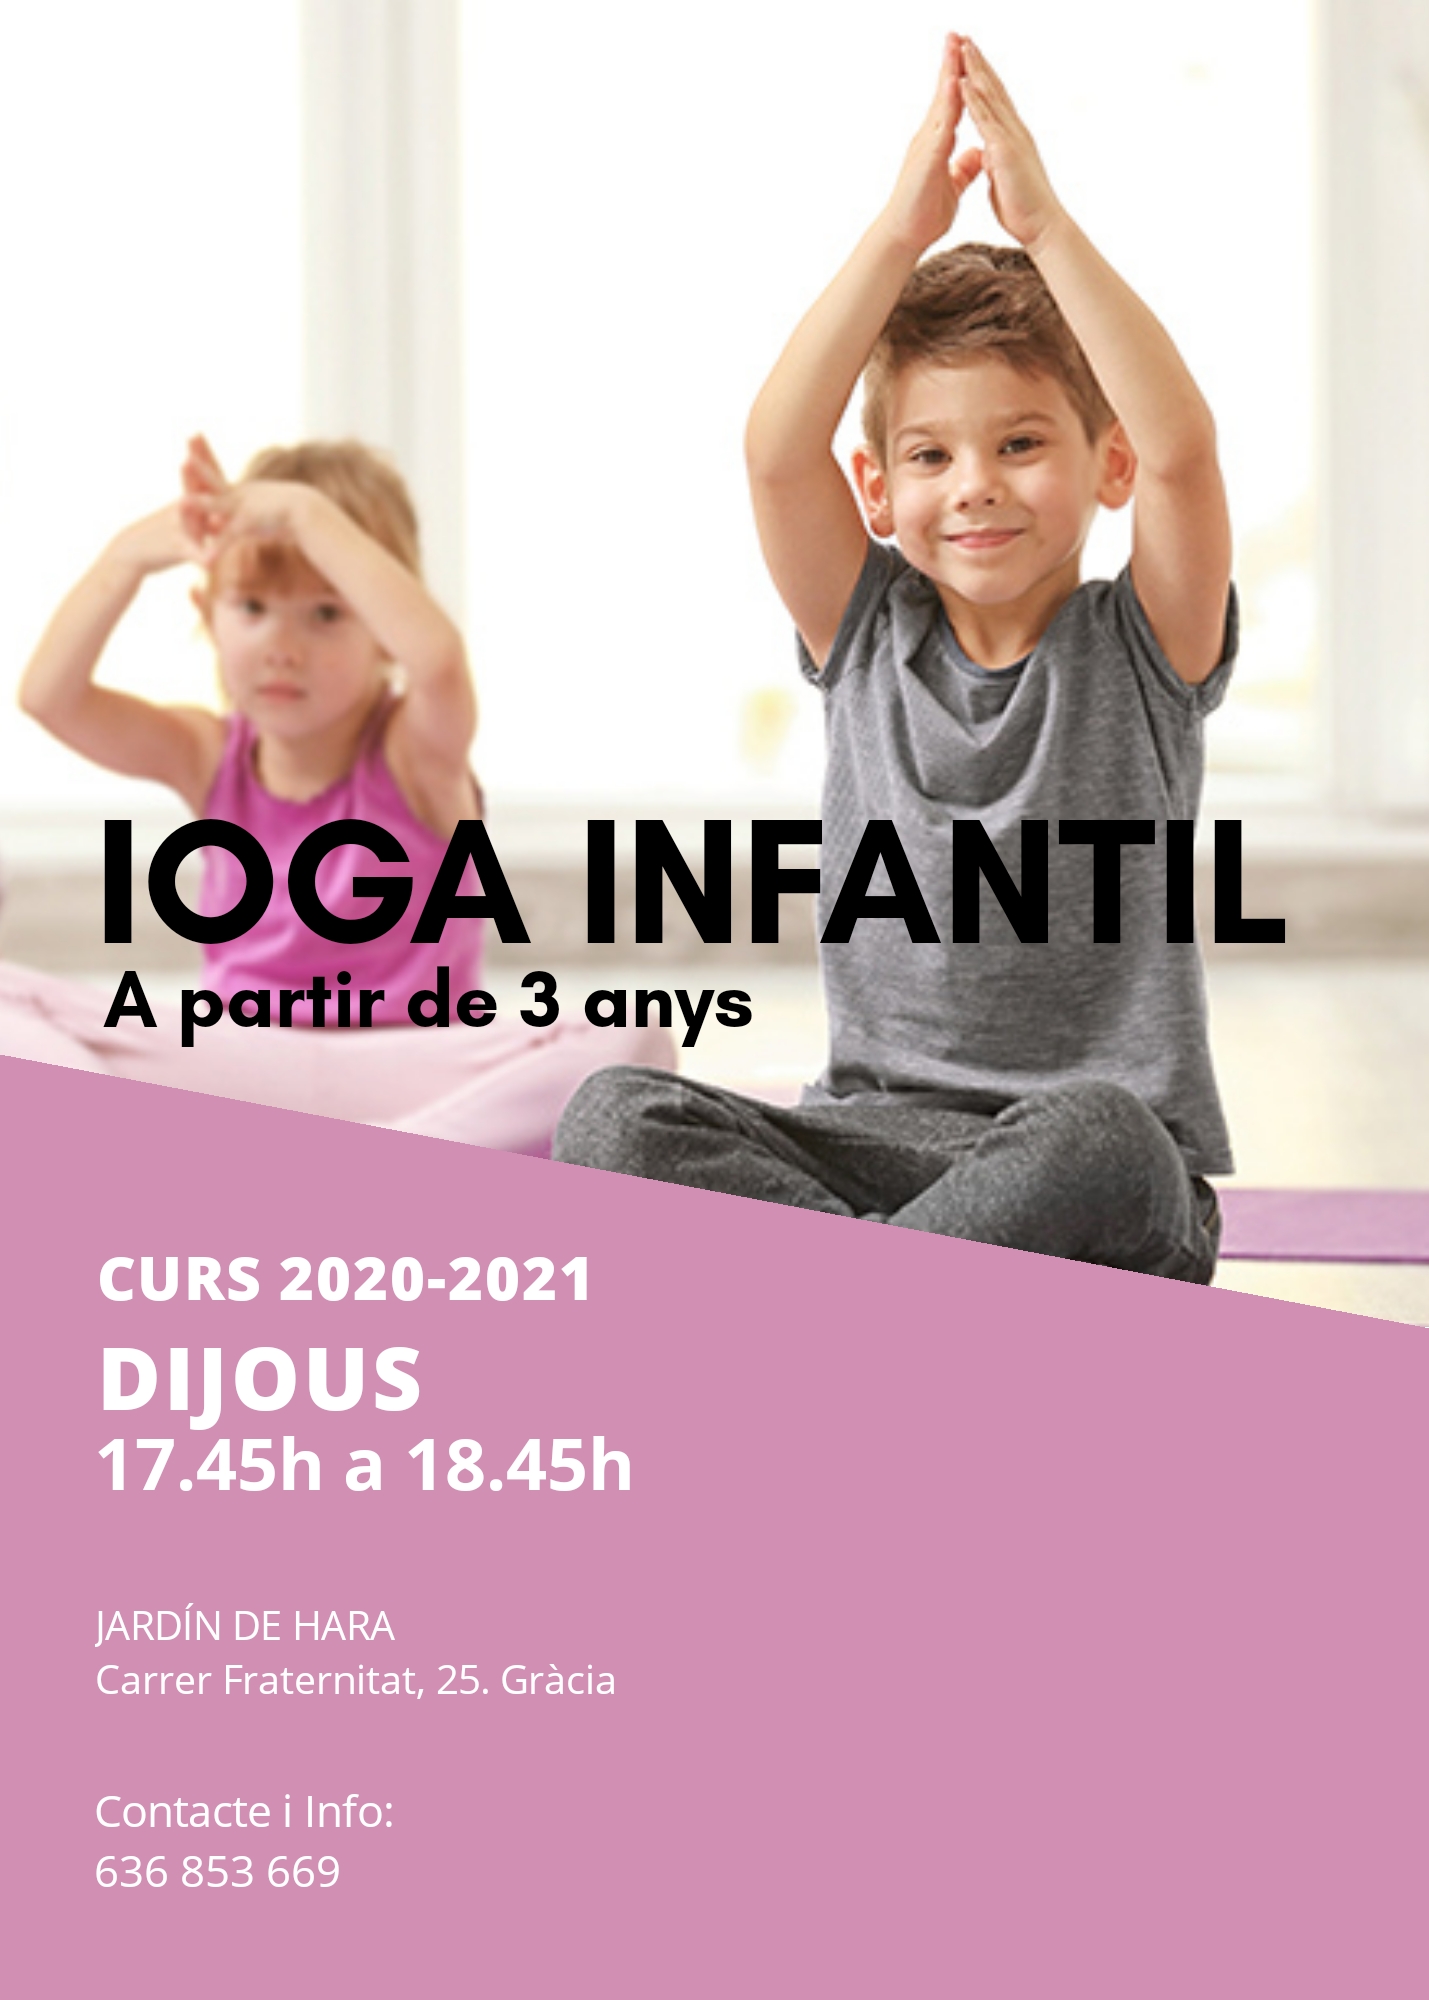 Yoga Infantil